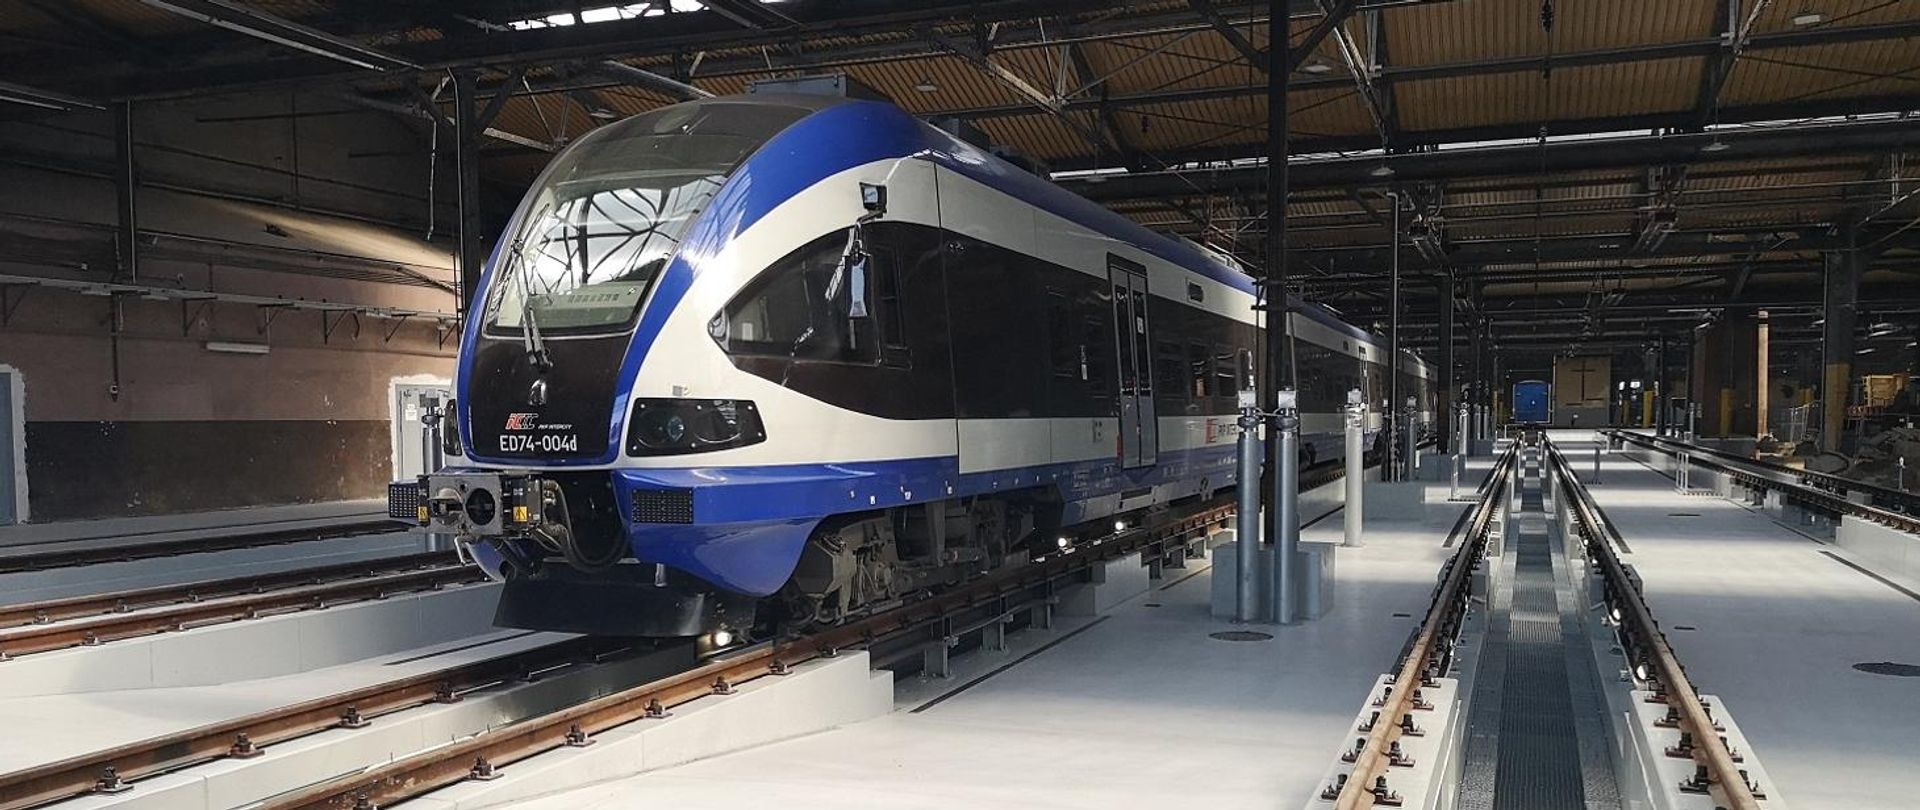 Zakończyły się dwa pierwsze etapy przebudowy lokomotywowni PKP Intercity we Wrocławiu